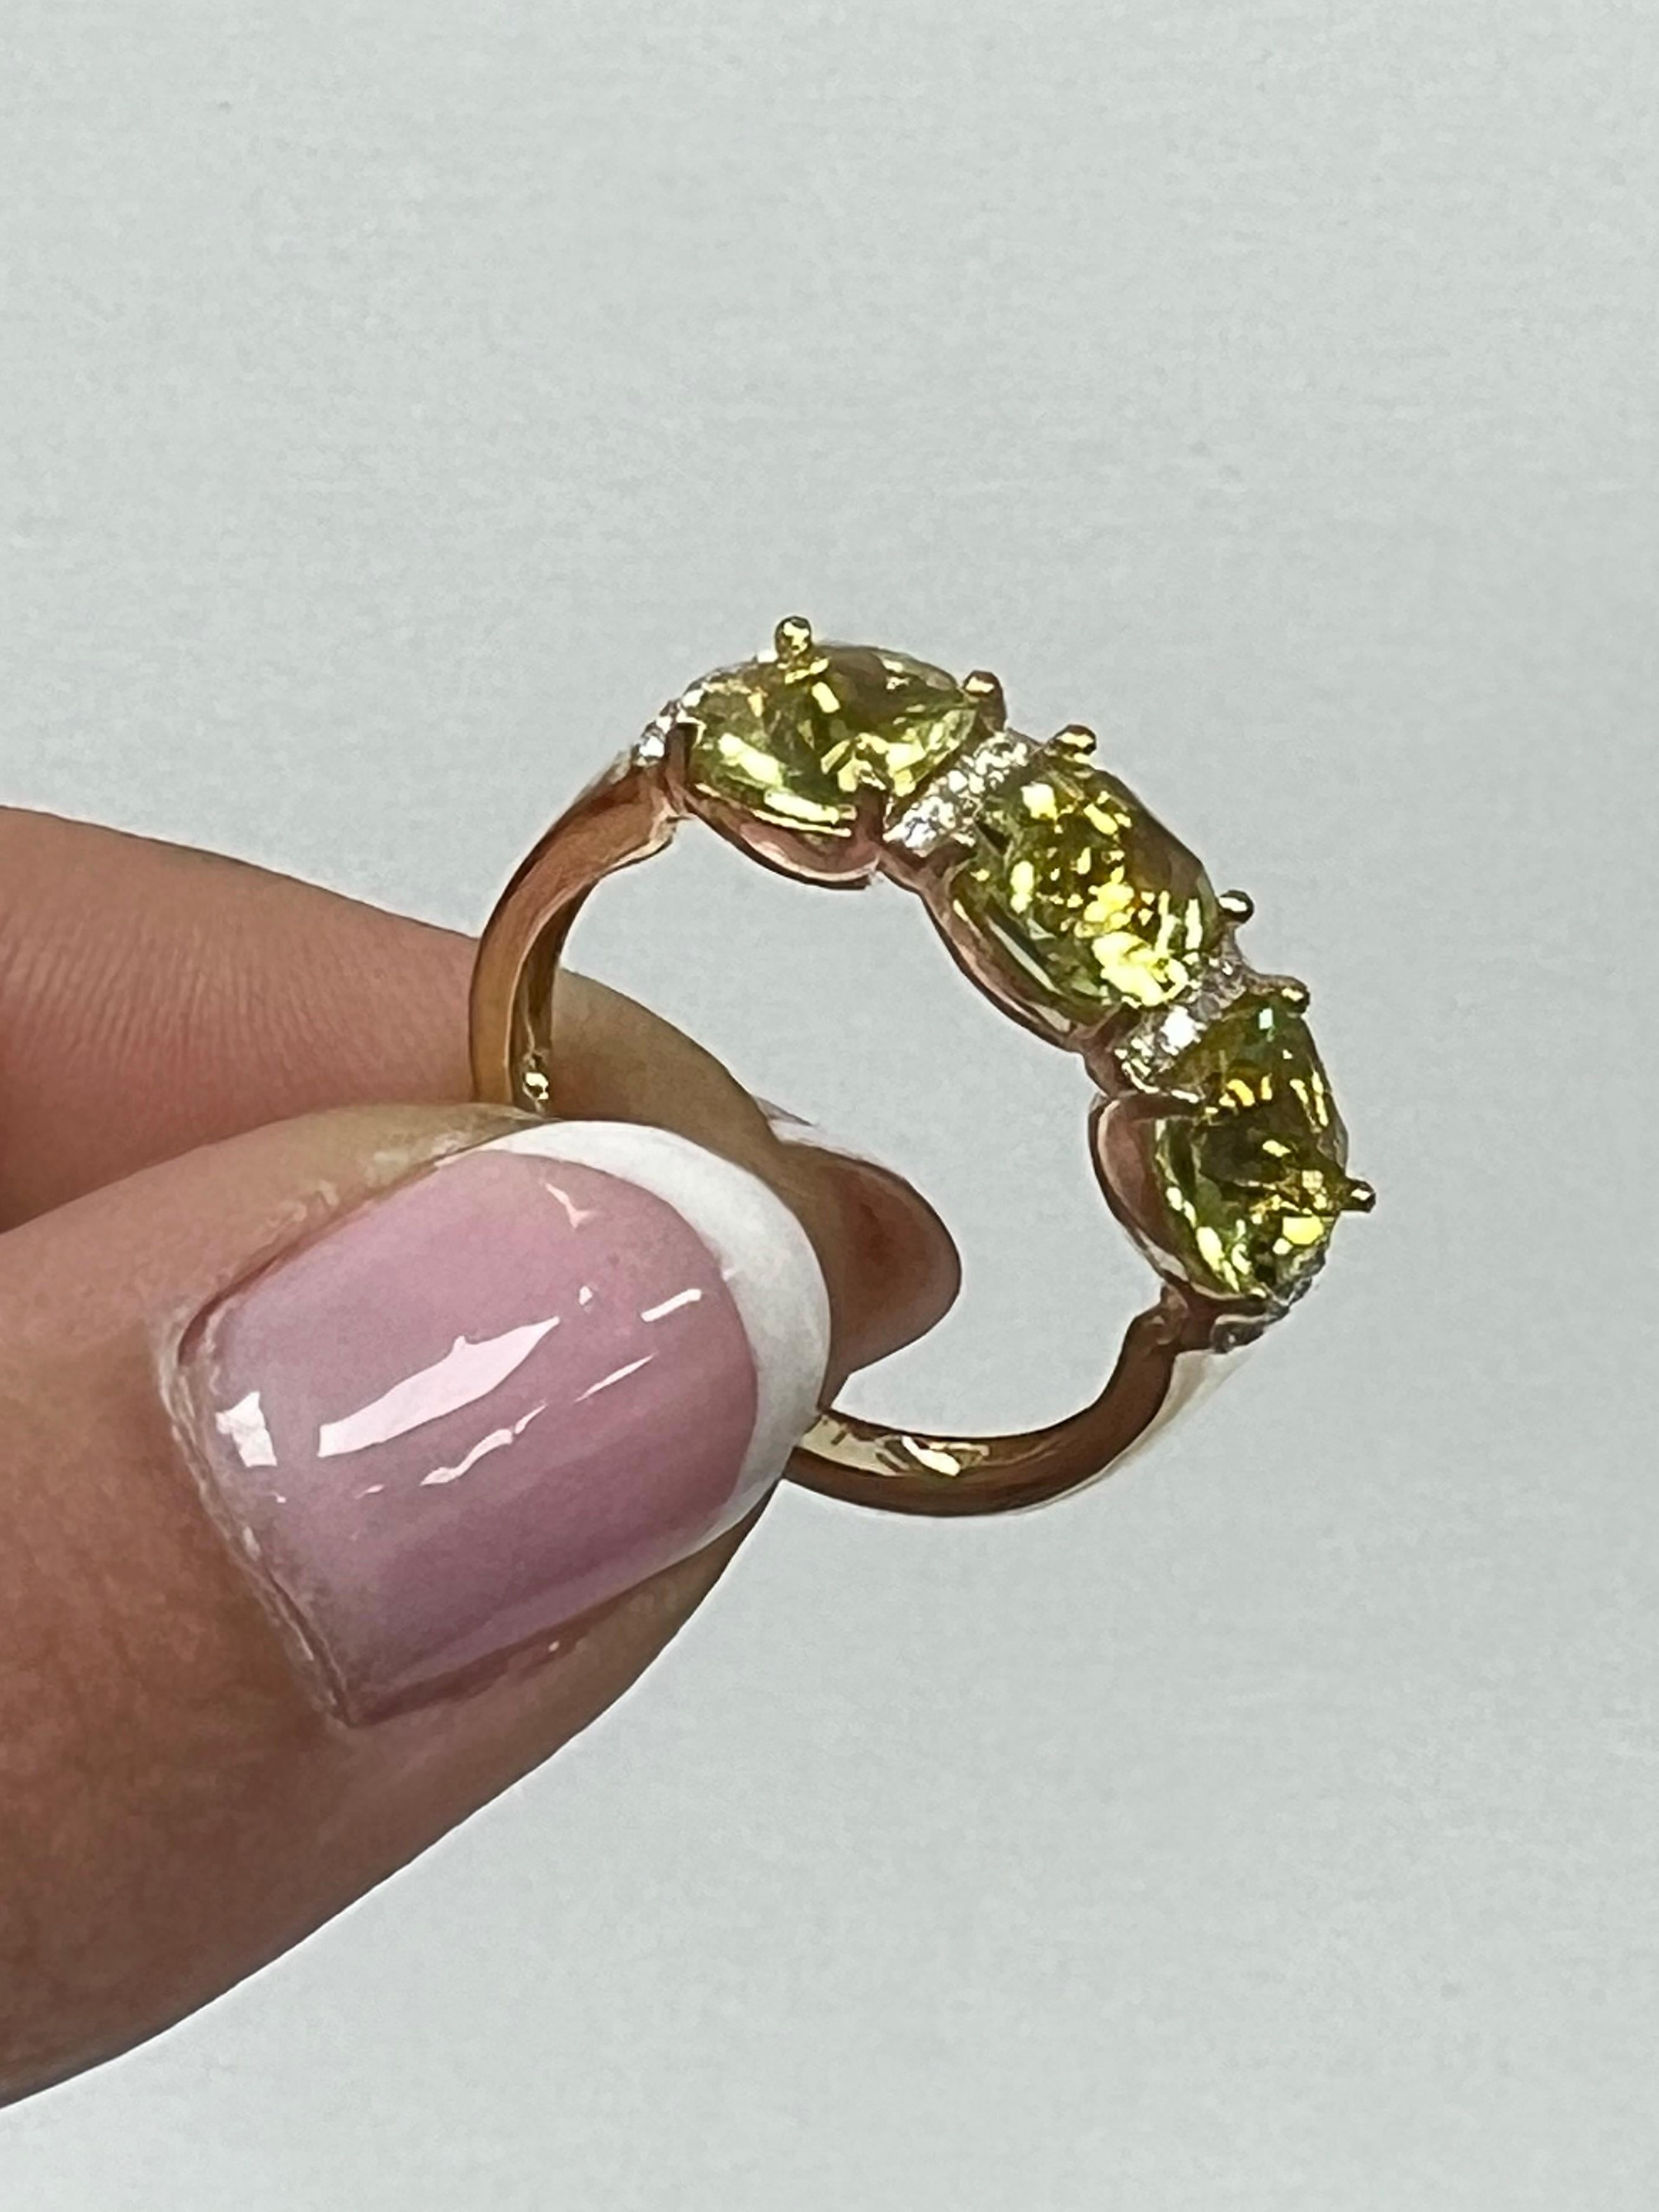 Emerald Cut 3 Stone Semi-Precious Ring For Sale